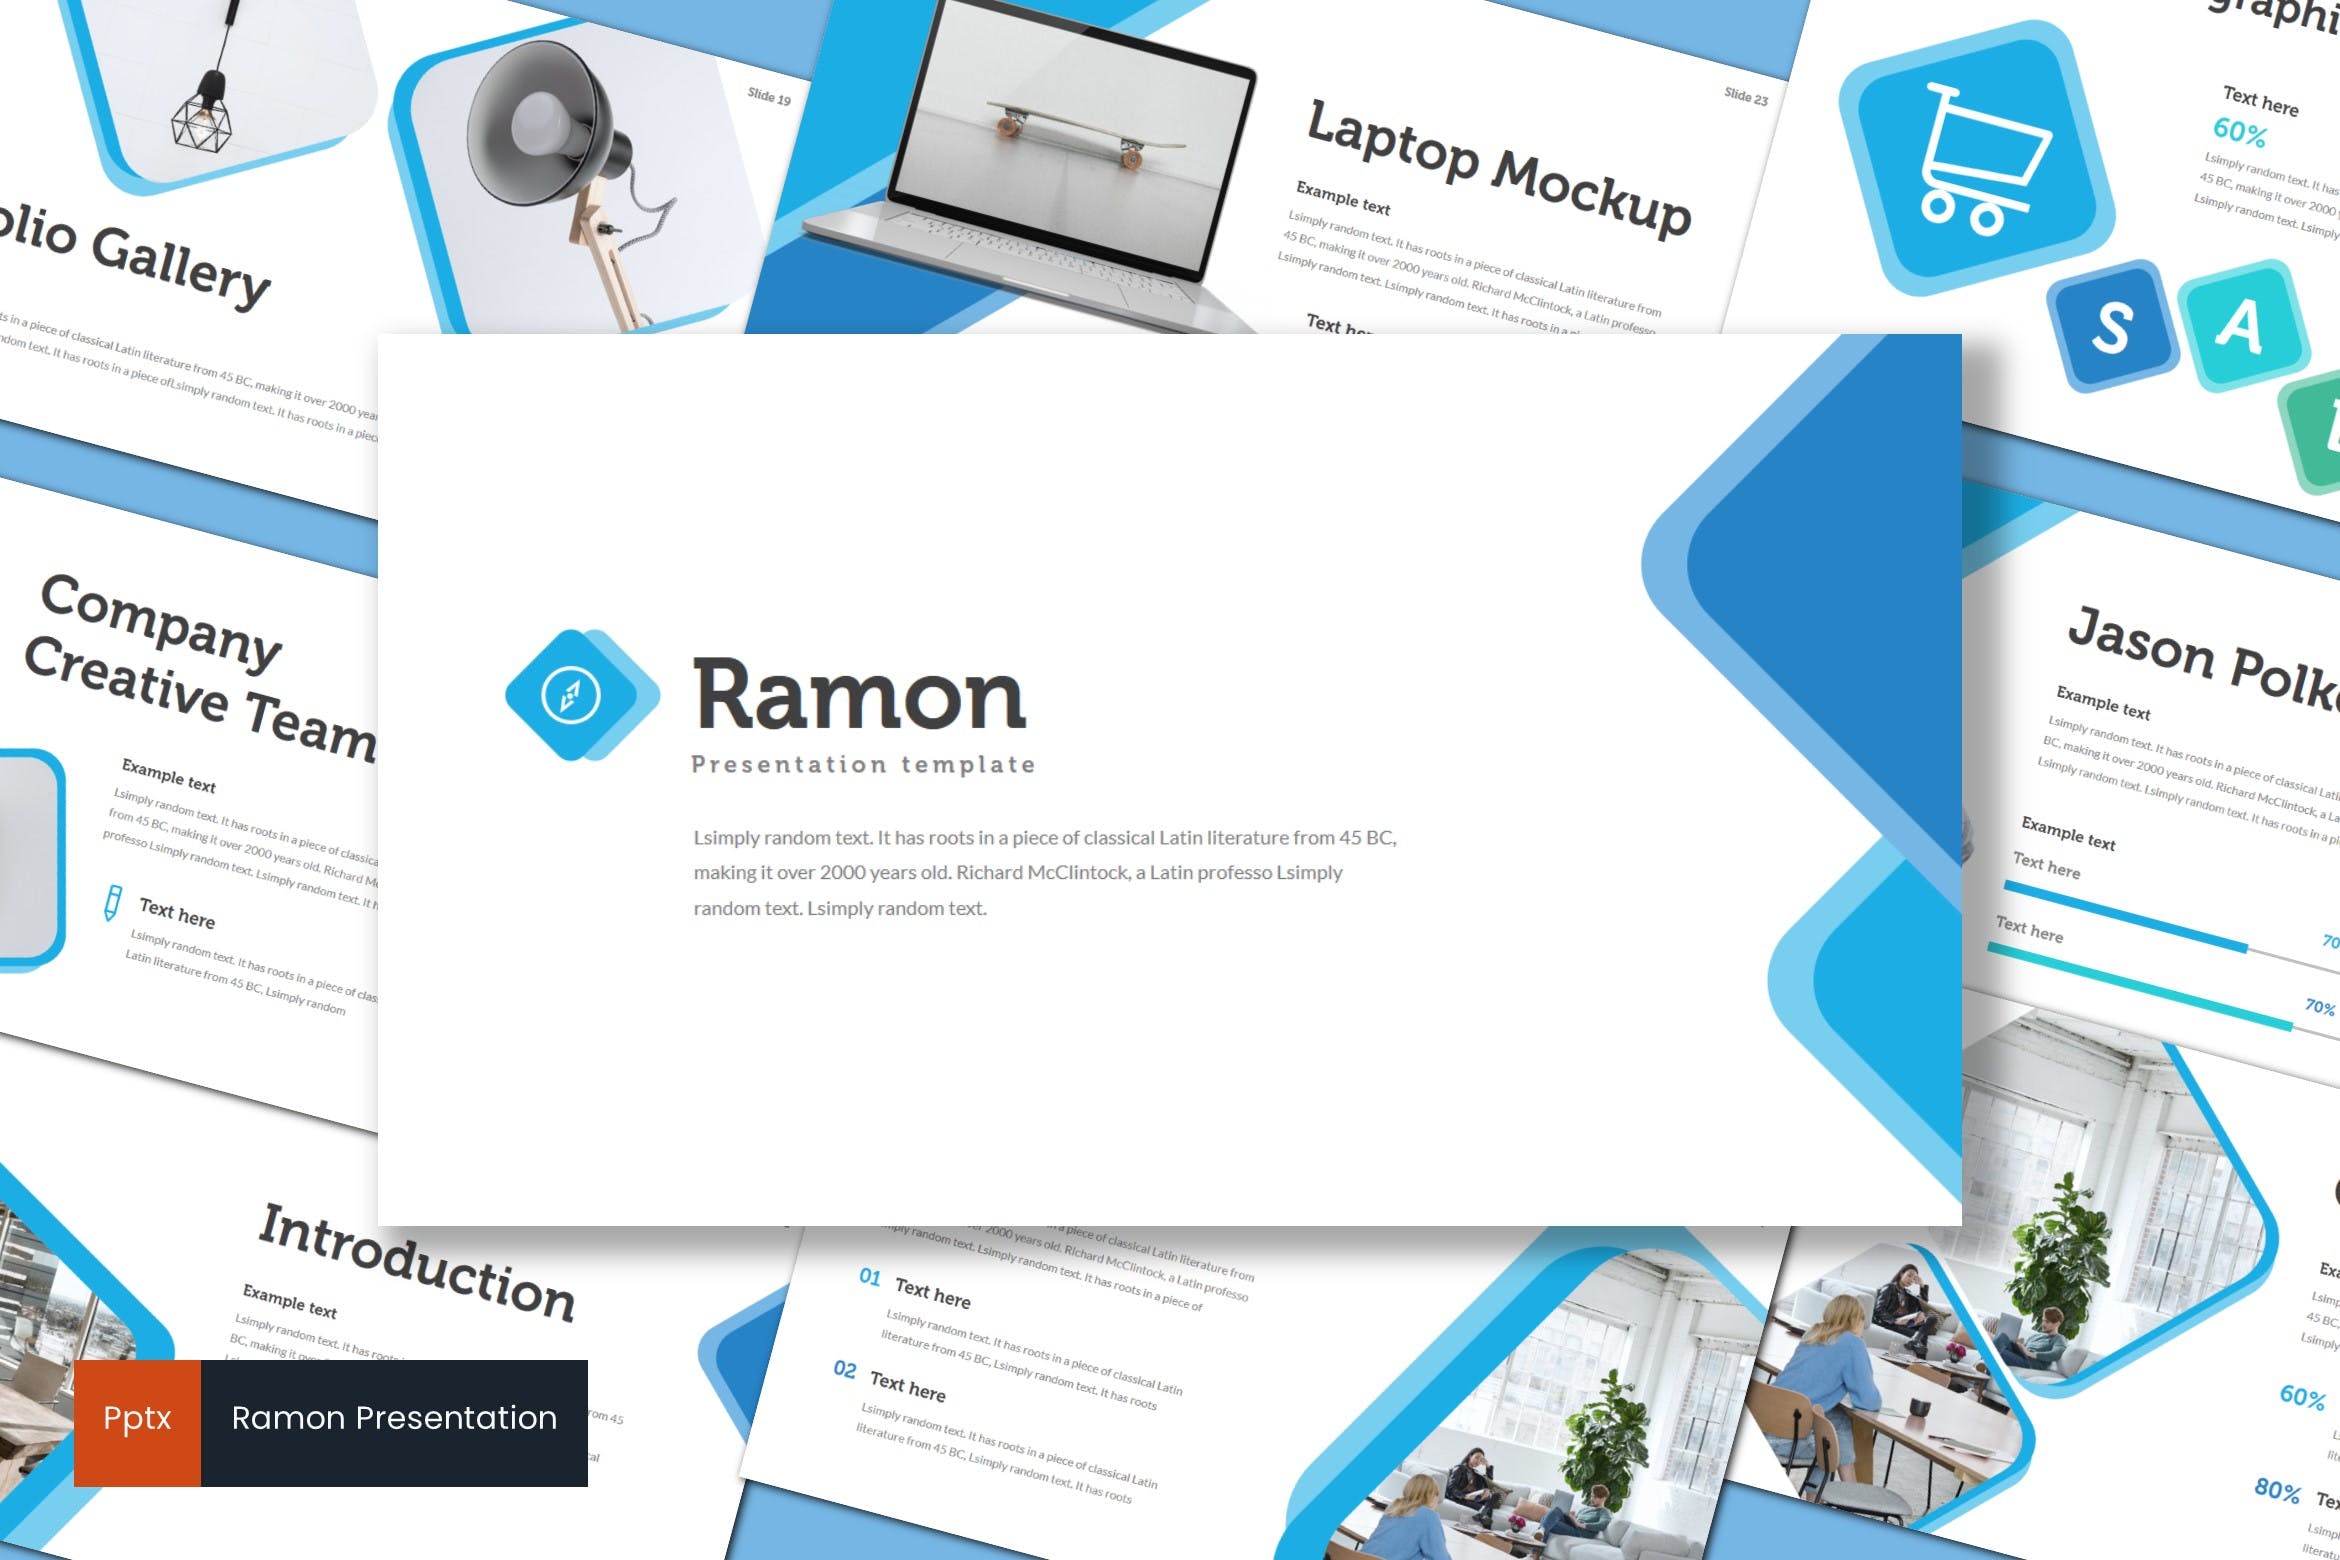 室内设计品牌宣传蚂蚁素材精选PPT模板 Ramon – Powerpoint Template插图